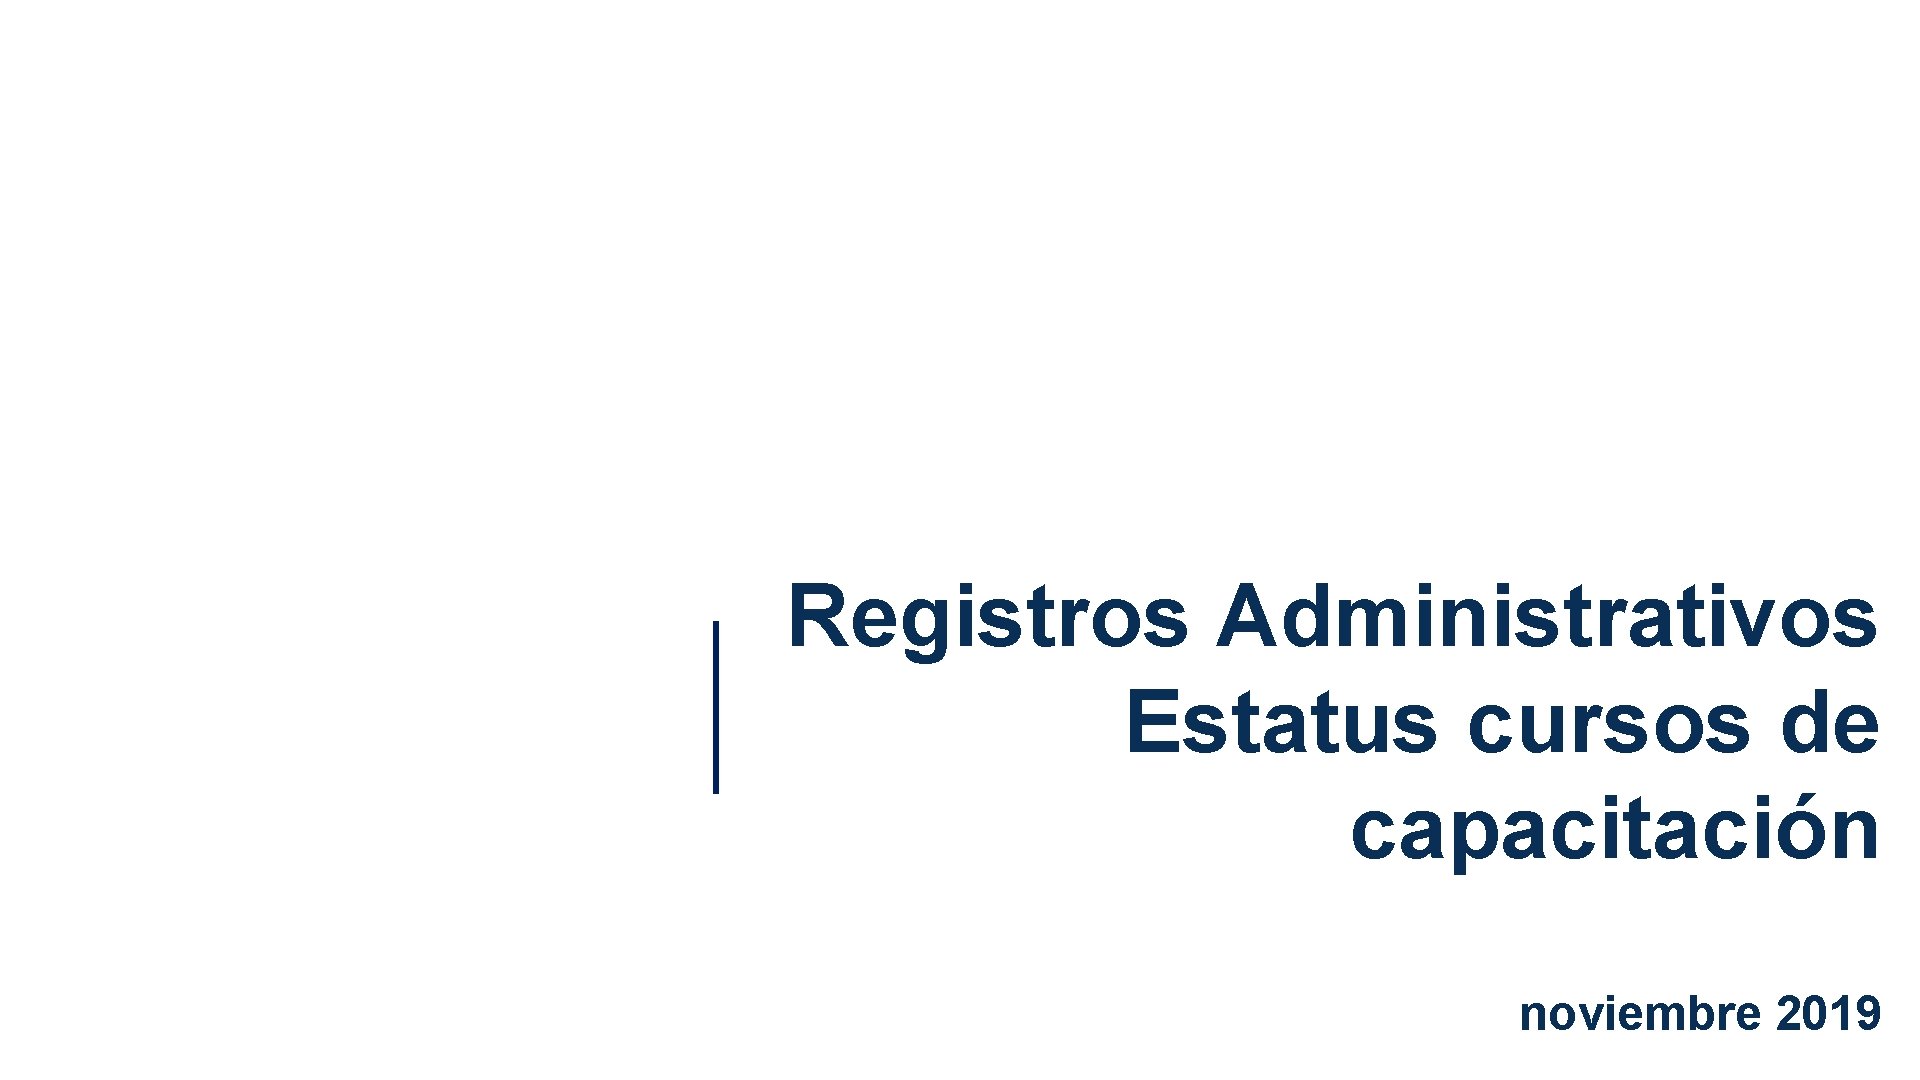 Registros Administrativos Estatus cursos de capacitación noviembre 2019 